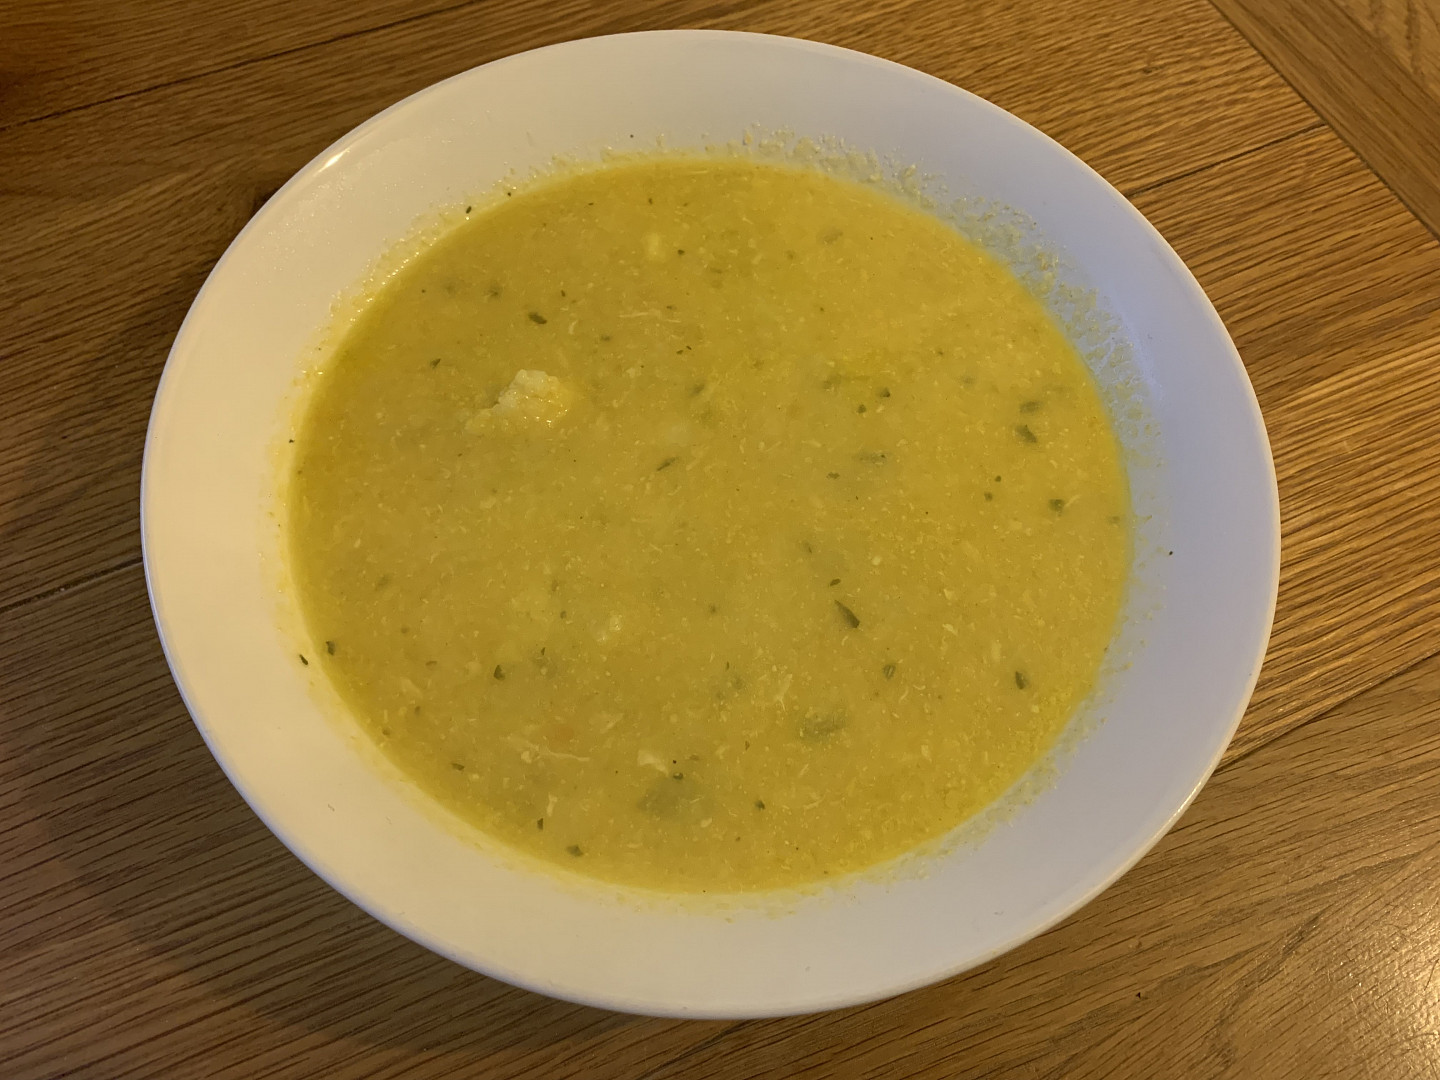 Květáková polévka s mrkví